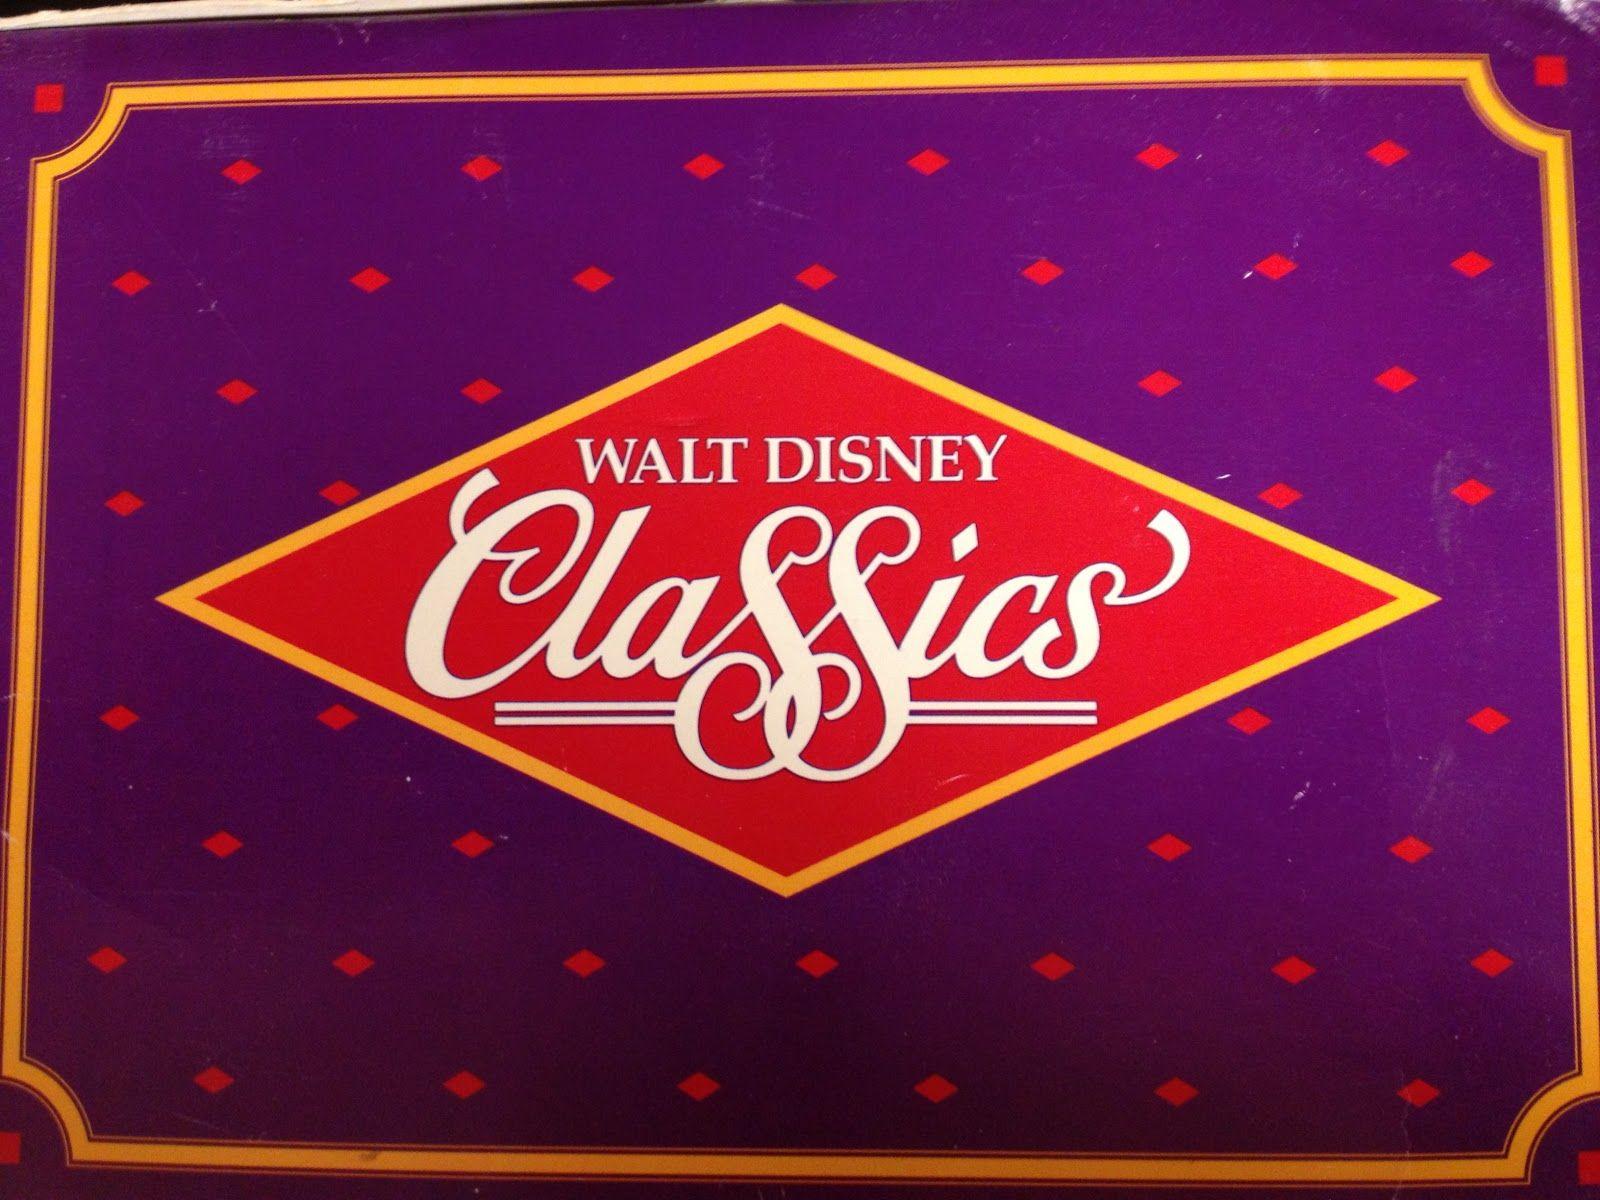 Walt Disney Classics 1992 Logo - Image - Photo-42.JPG | Logopedia | FANDOM powered by Wikia